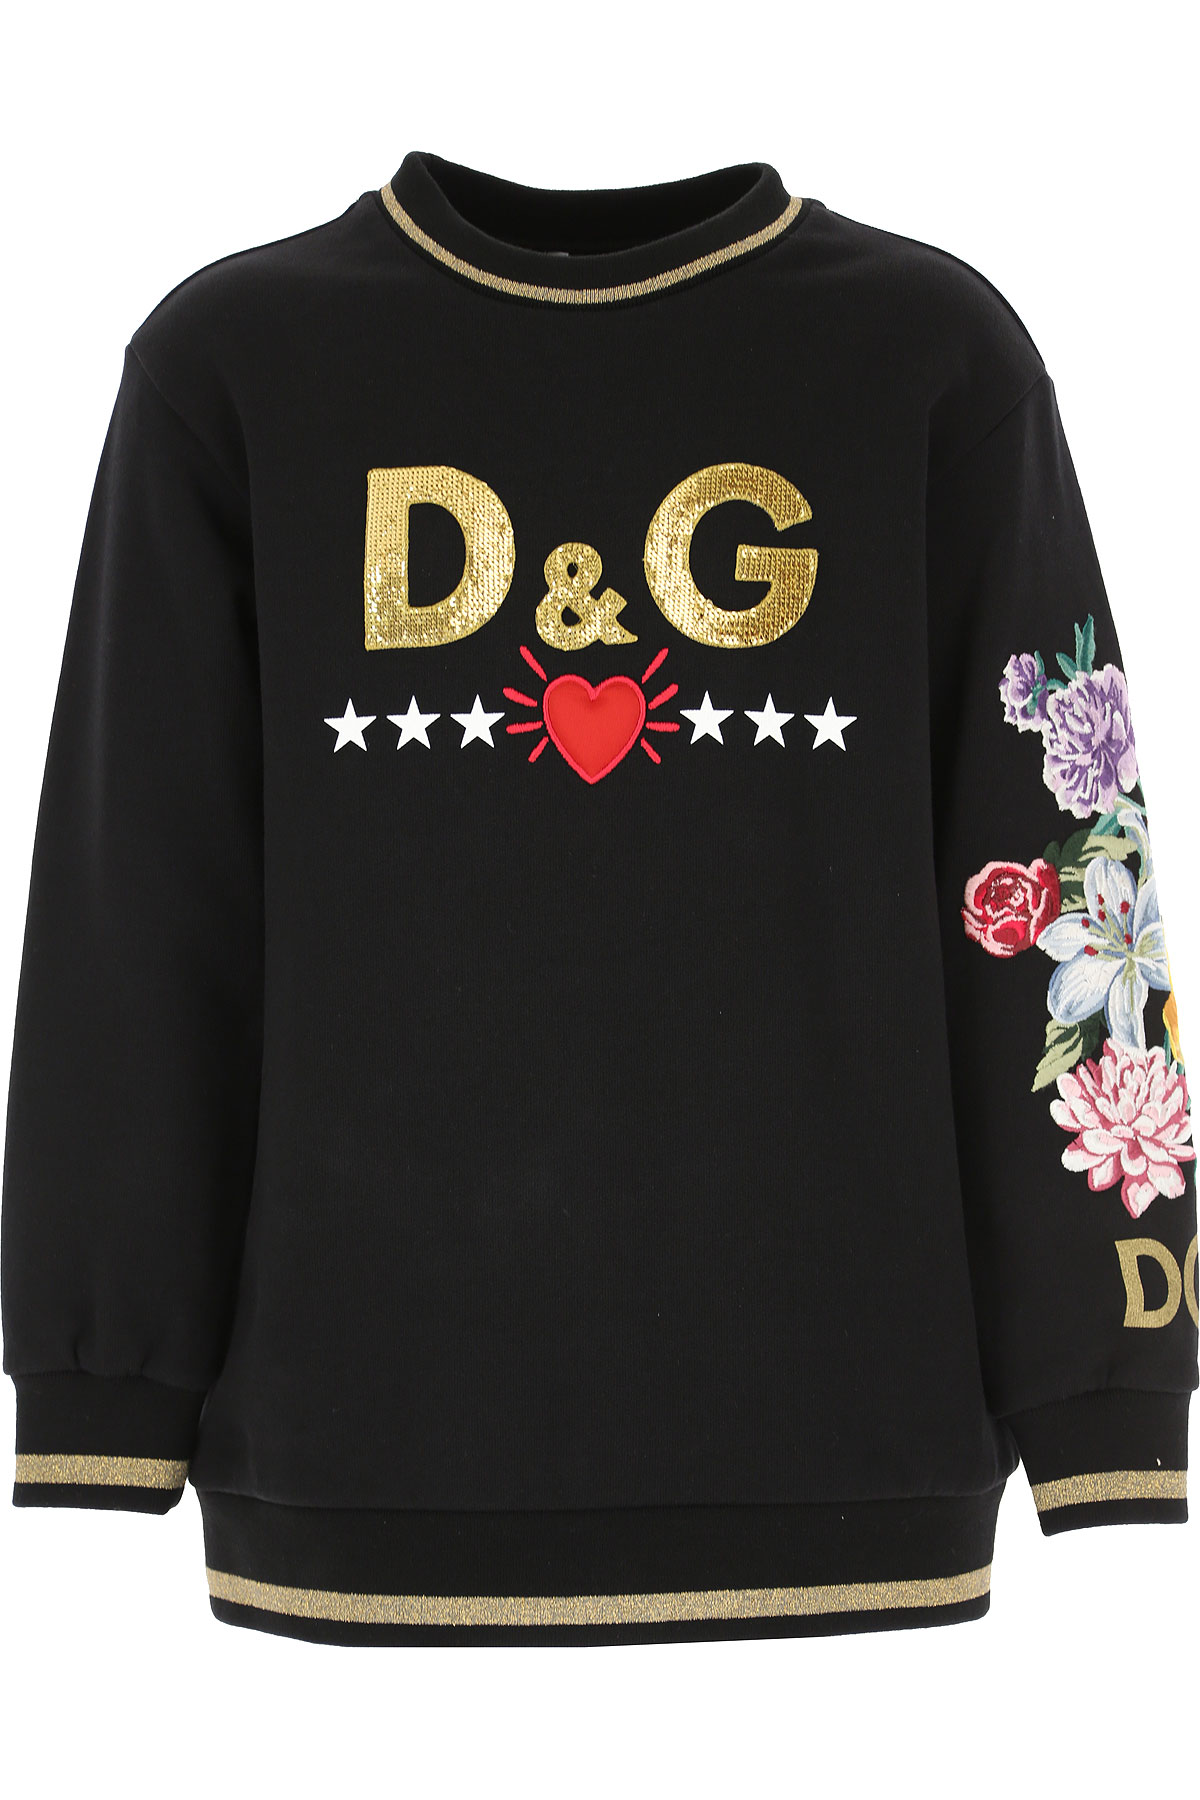 Dolce & Gabbana Kinder Sweatshirt & Kapuzenpullover für Mädchen Günstig im Sale, Schwarz, Baumwolle, 2017, 10Y 3Y 5Y 6Y 6Y 8Y